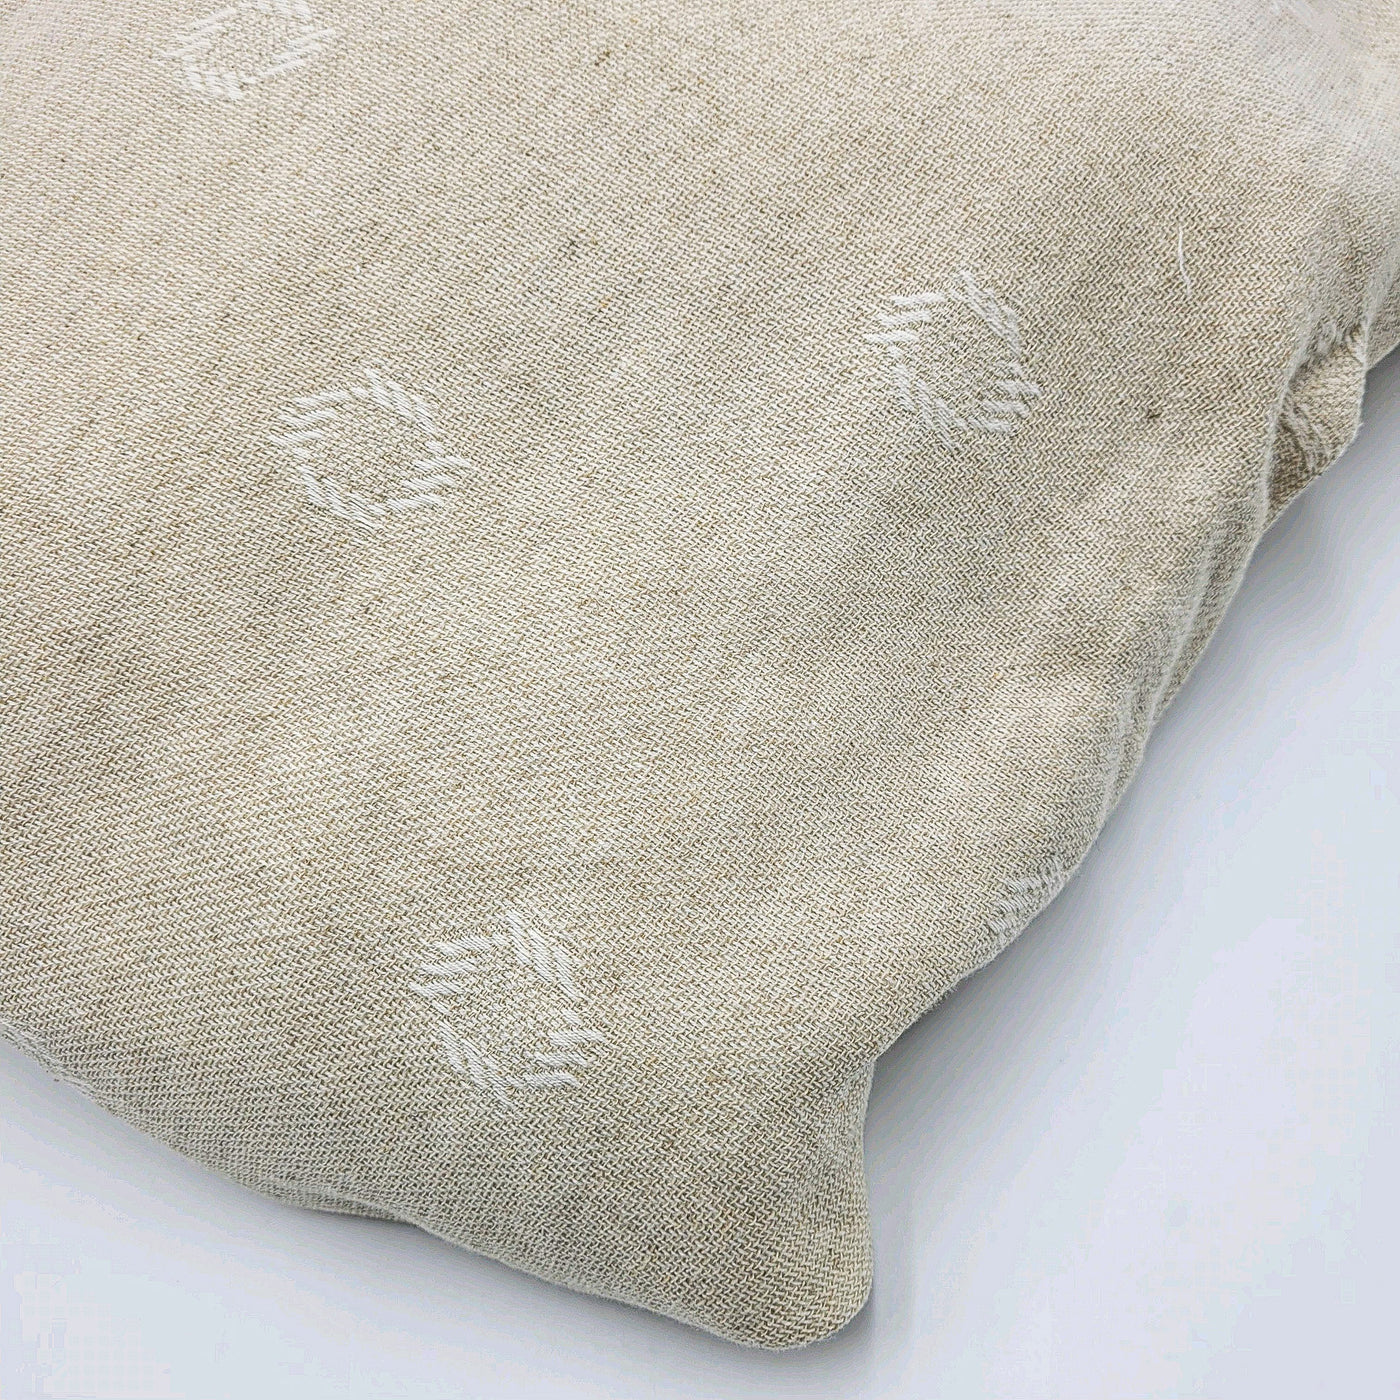 Textil Funda nórdica Fibras naturales Beige